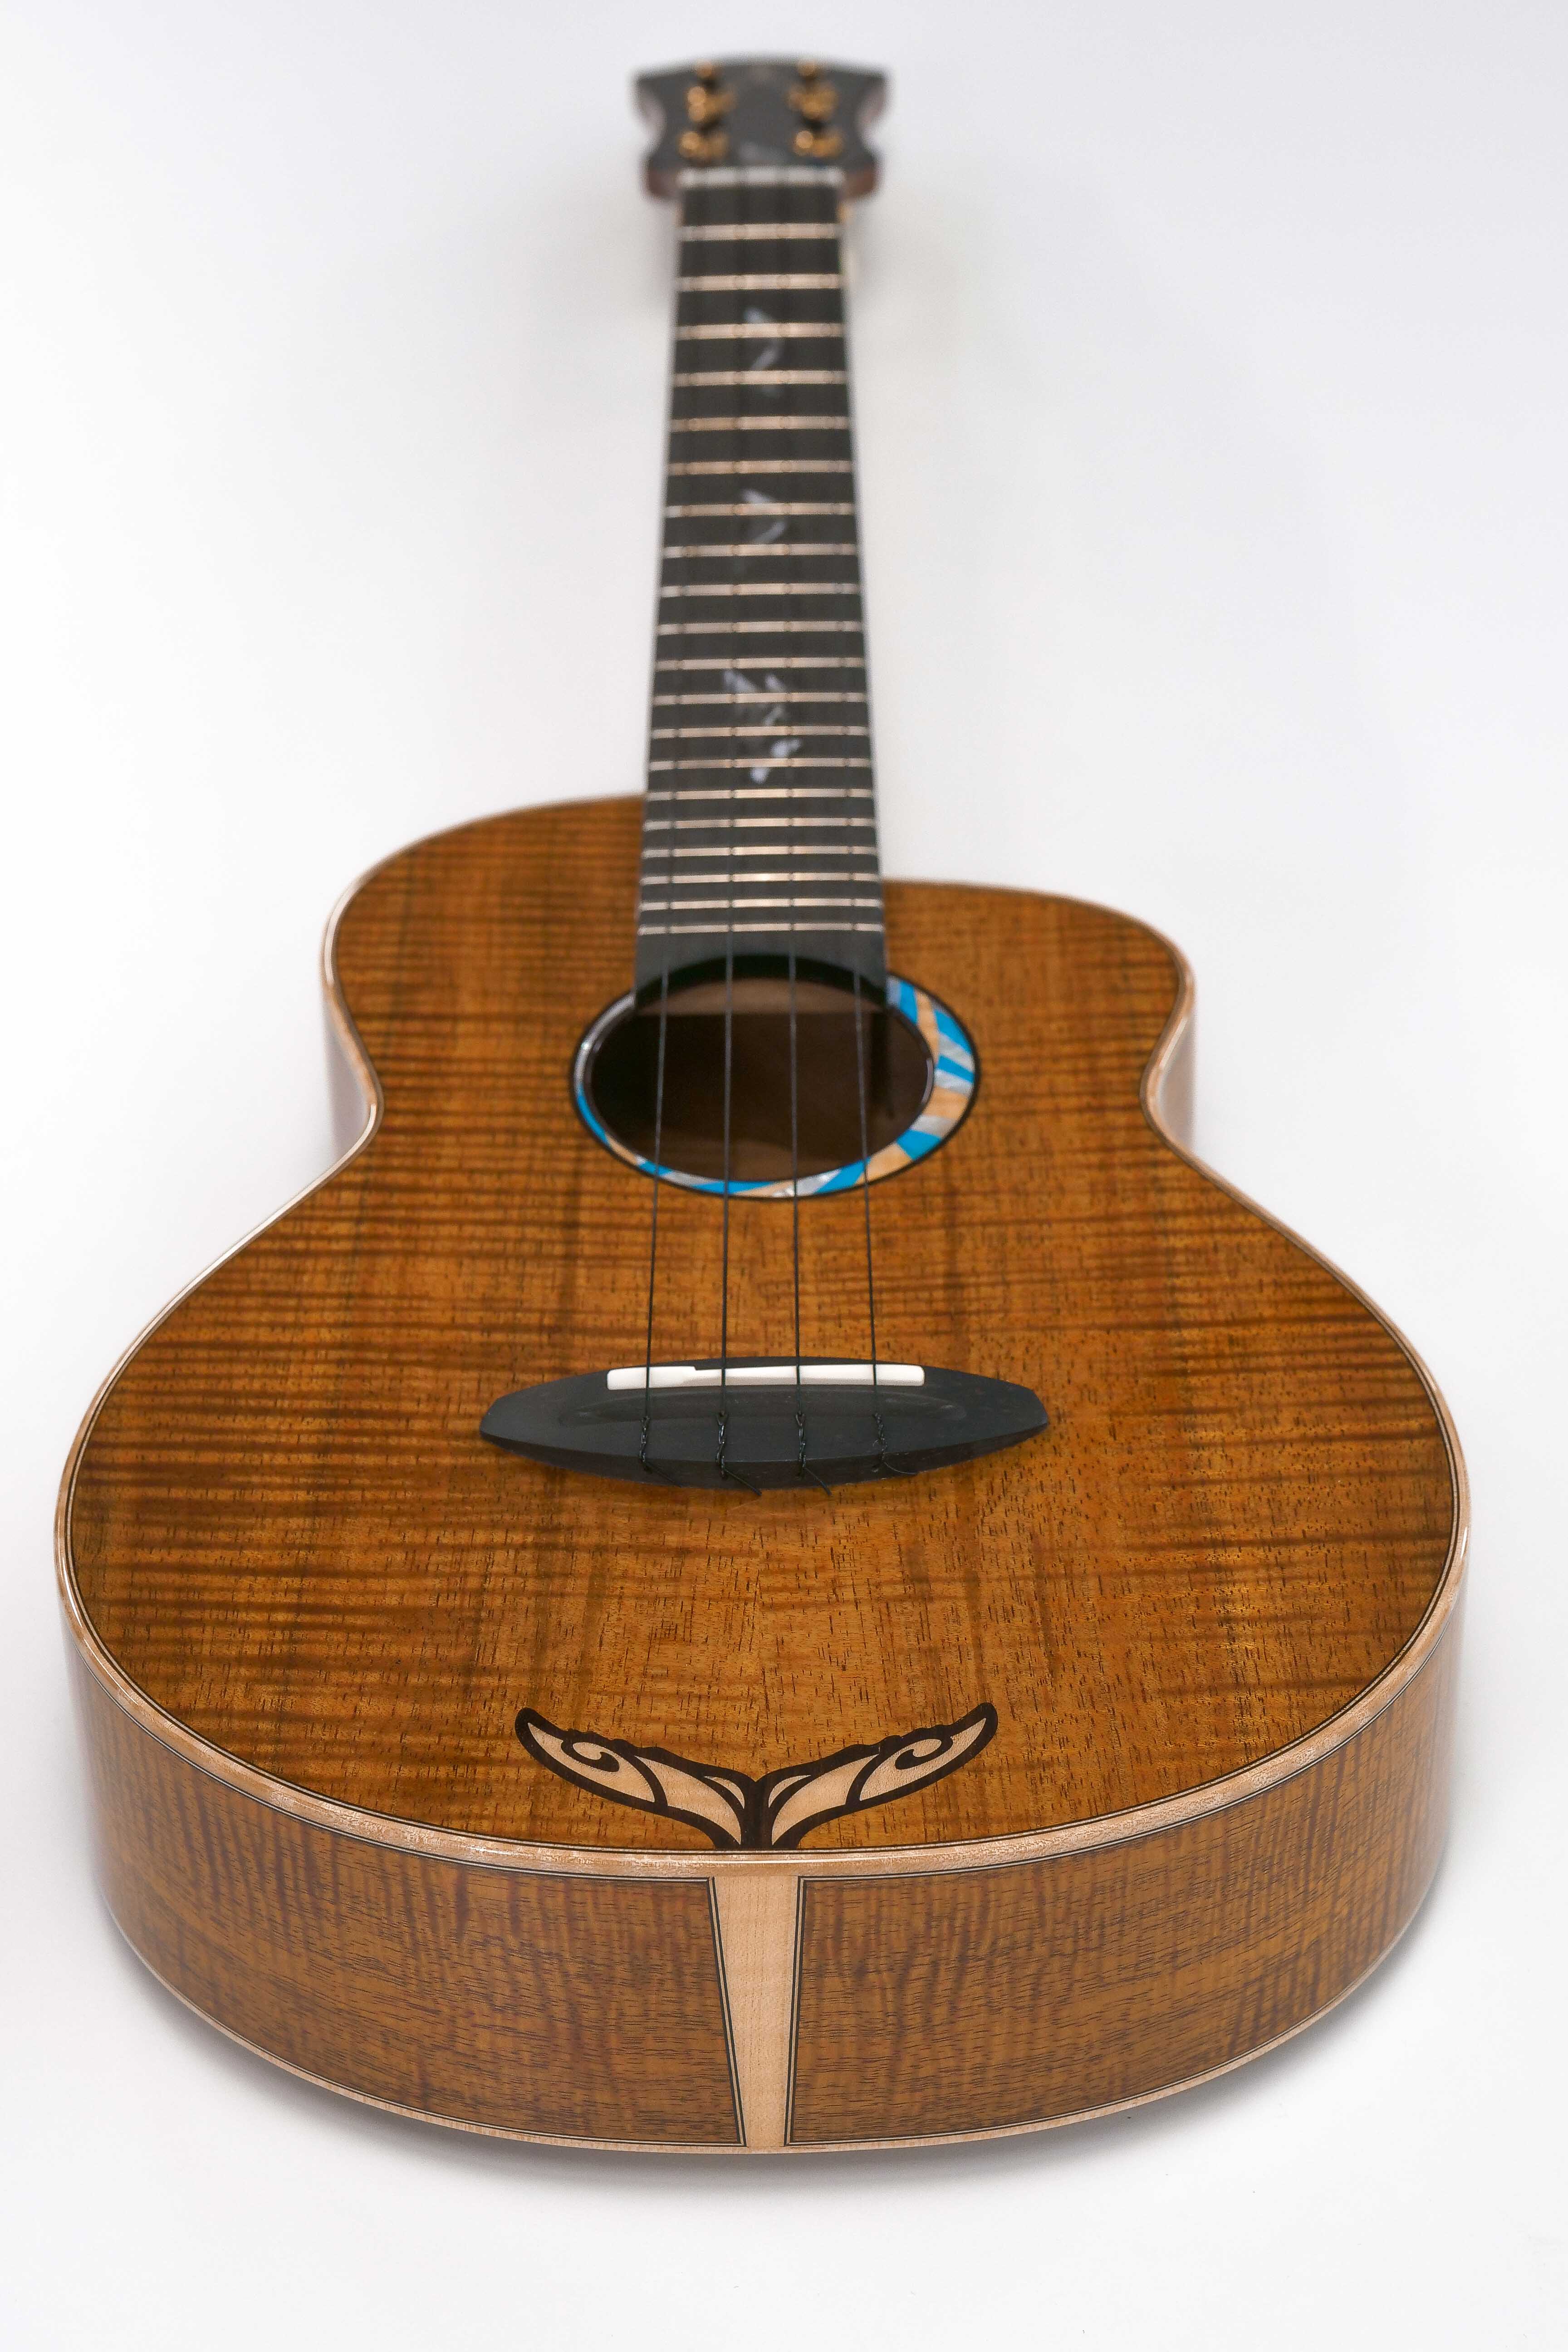 Full ukulele